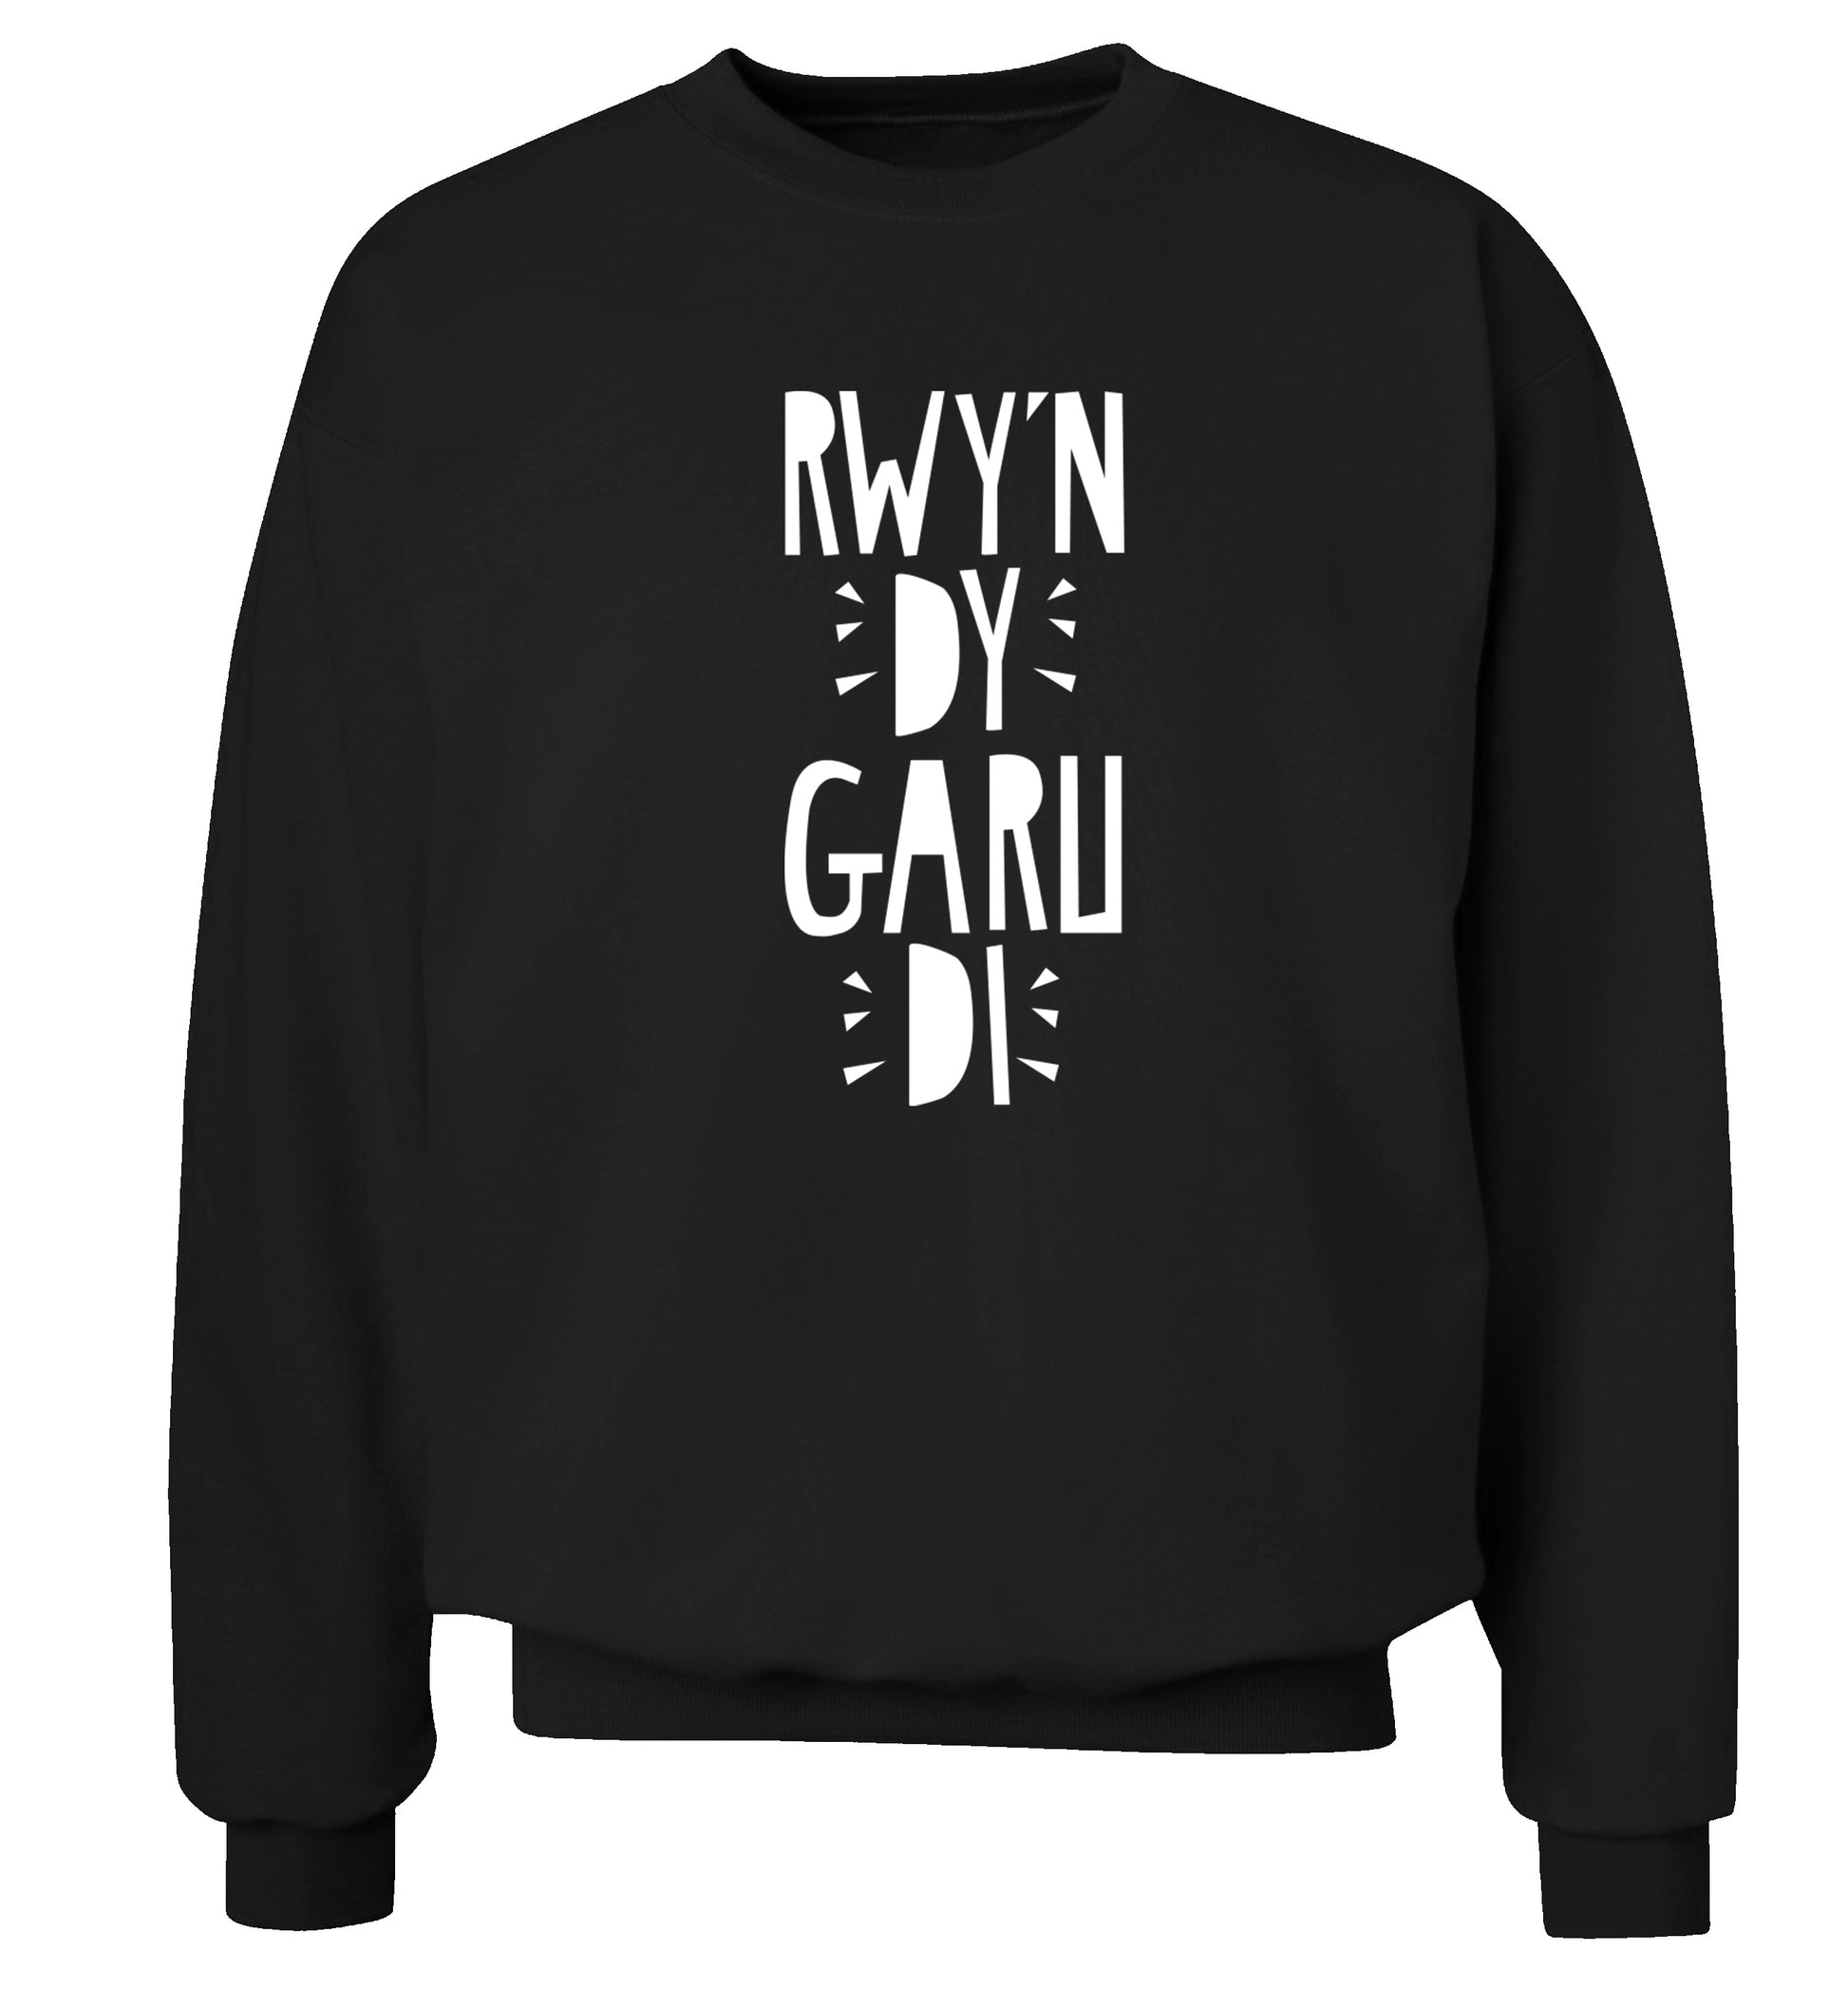 Rwy'n dy garu di - I love you Adult's unisex black Sweater 2XL